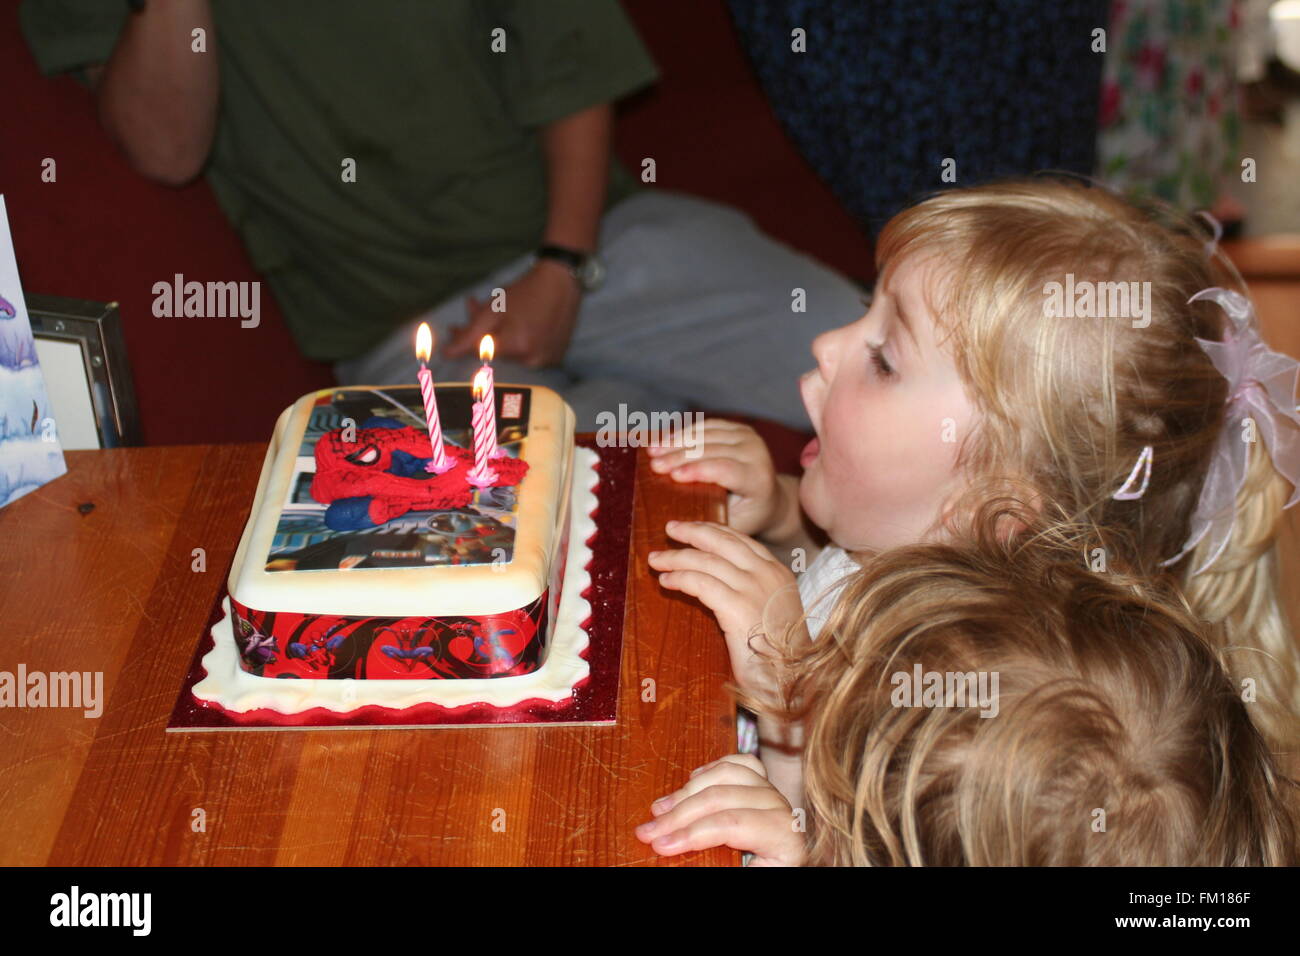 Spiderman - Decoración de pastel de cumpleaños para niños, decoración de  pastel de cumpleaños para niños